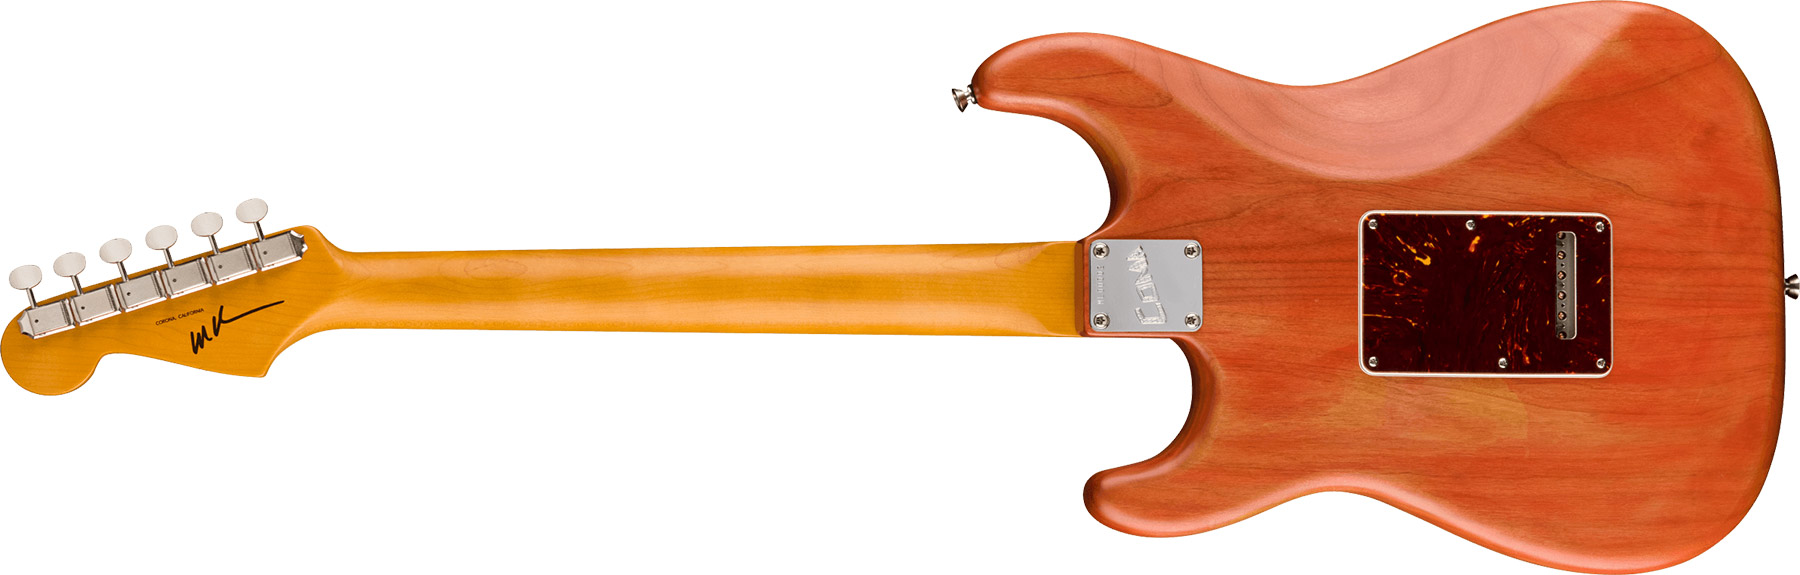 Fender Michael Landau Strat Coma Stories Usa Signature Hss Trem Rw - Coma Red - Guitare Électrique Forme Str - Variation 1